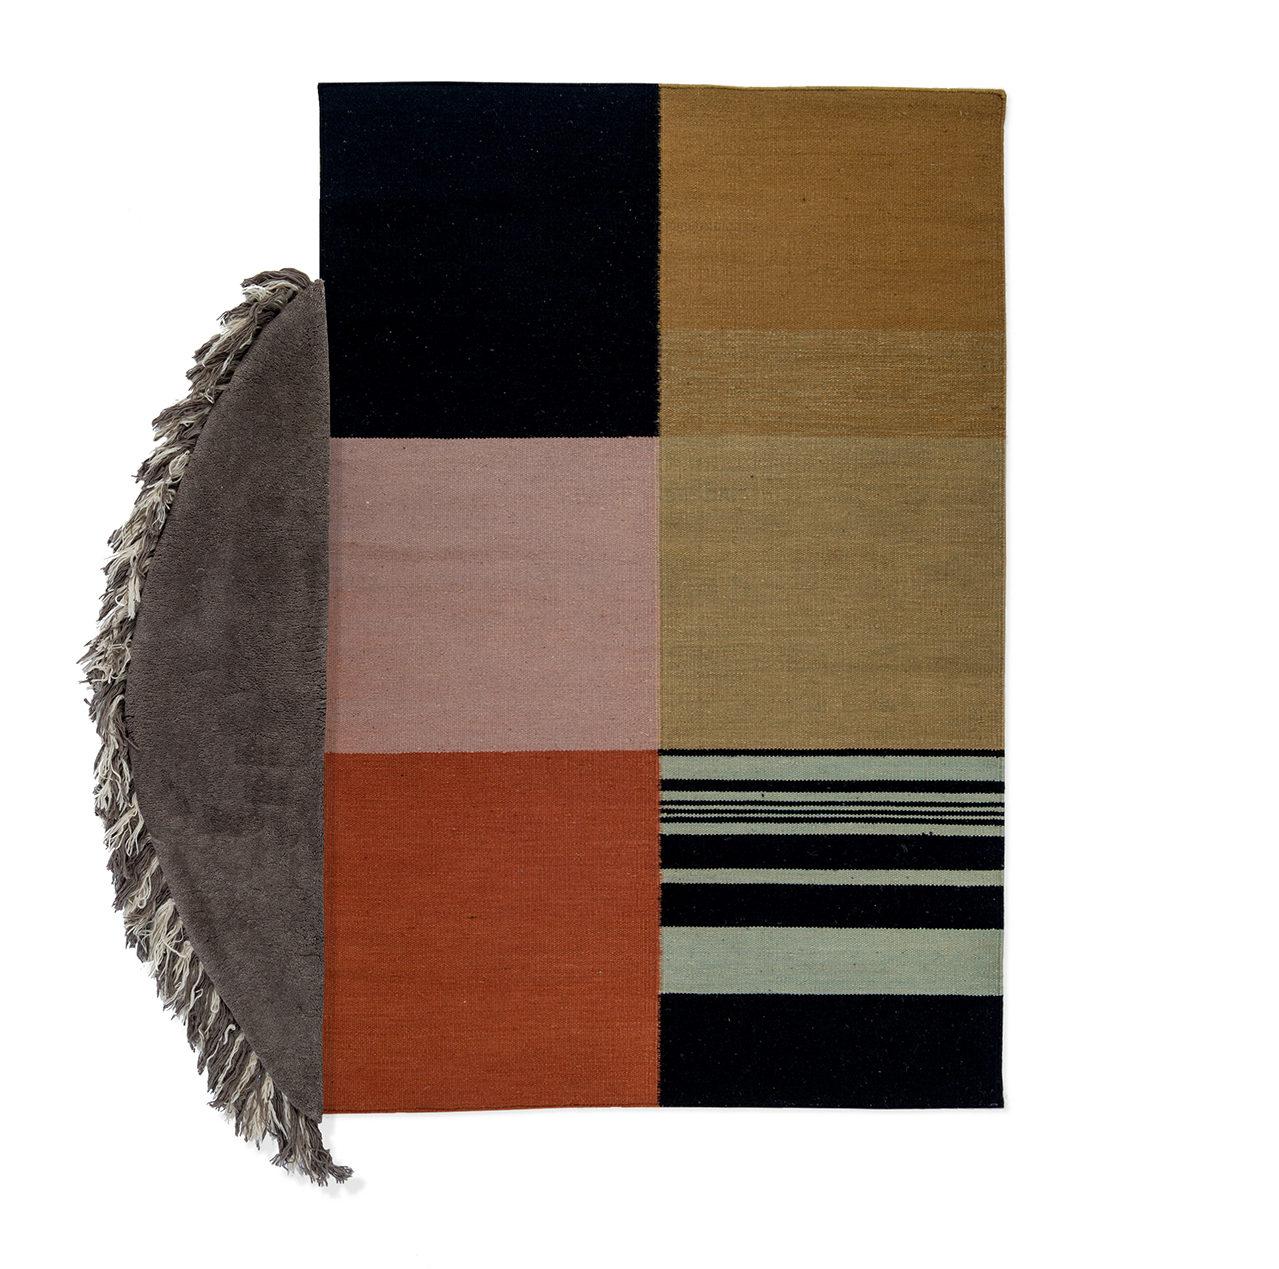 Nr. 3 Freeplay Handgeknüpfter Teppich Ensemble von Lyk Carpet
Abmessungen: L 180 x B 150 cm.
MATERIALIEN: 100% handgesponnene tibetische Hochlandschurwolle, von lebenden Schafen, traditionell pflanzlich gefärbt, kesselfarbig.
Handgeknüpfte manuelle